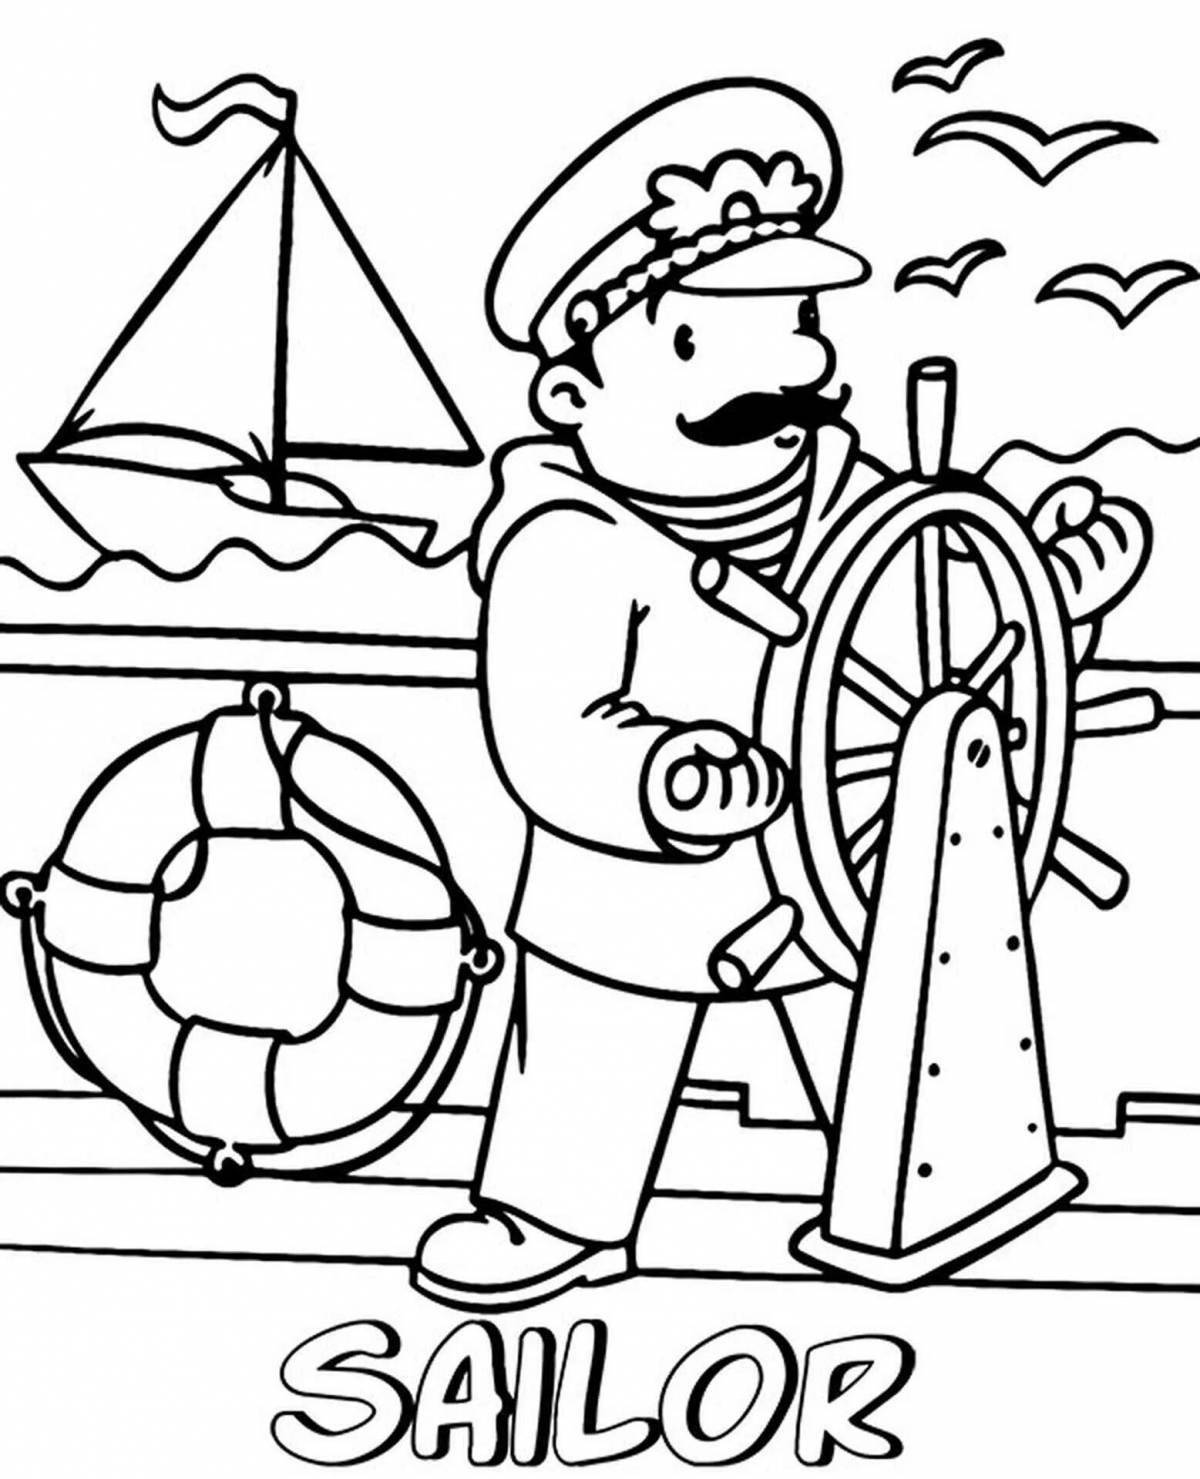 Моряк раскраска для детей